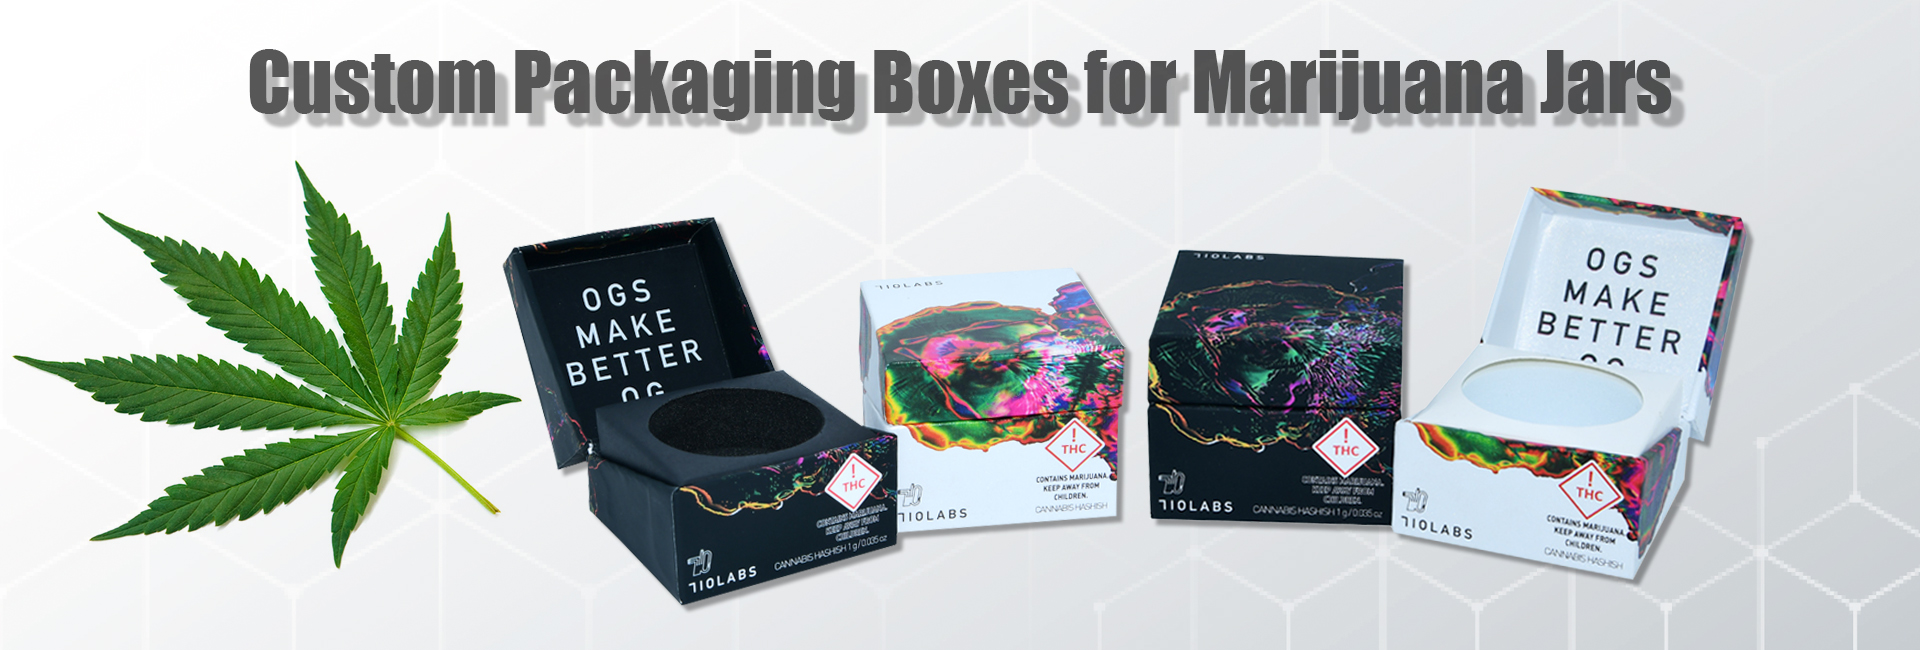 Cannabis Packaging Box 